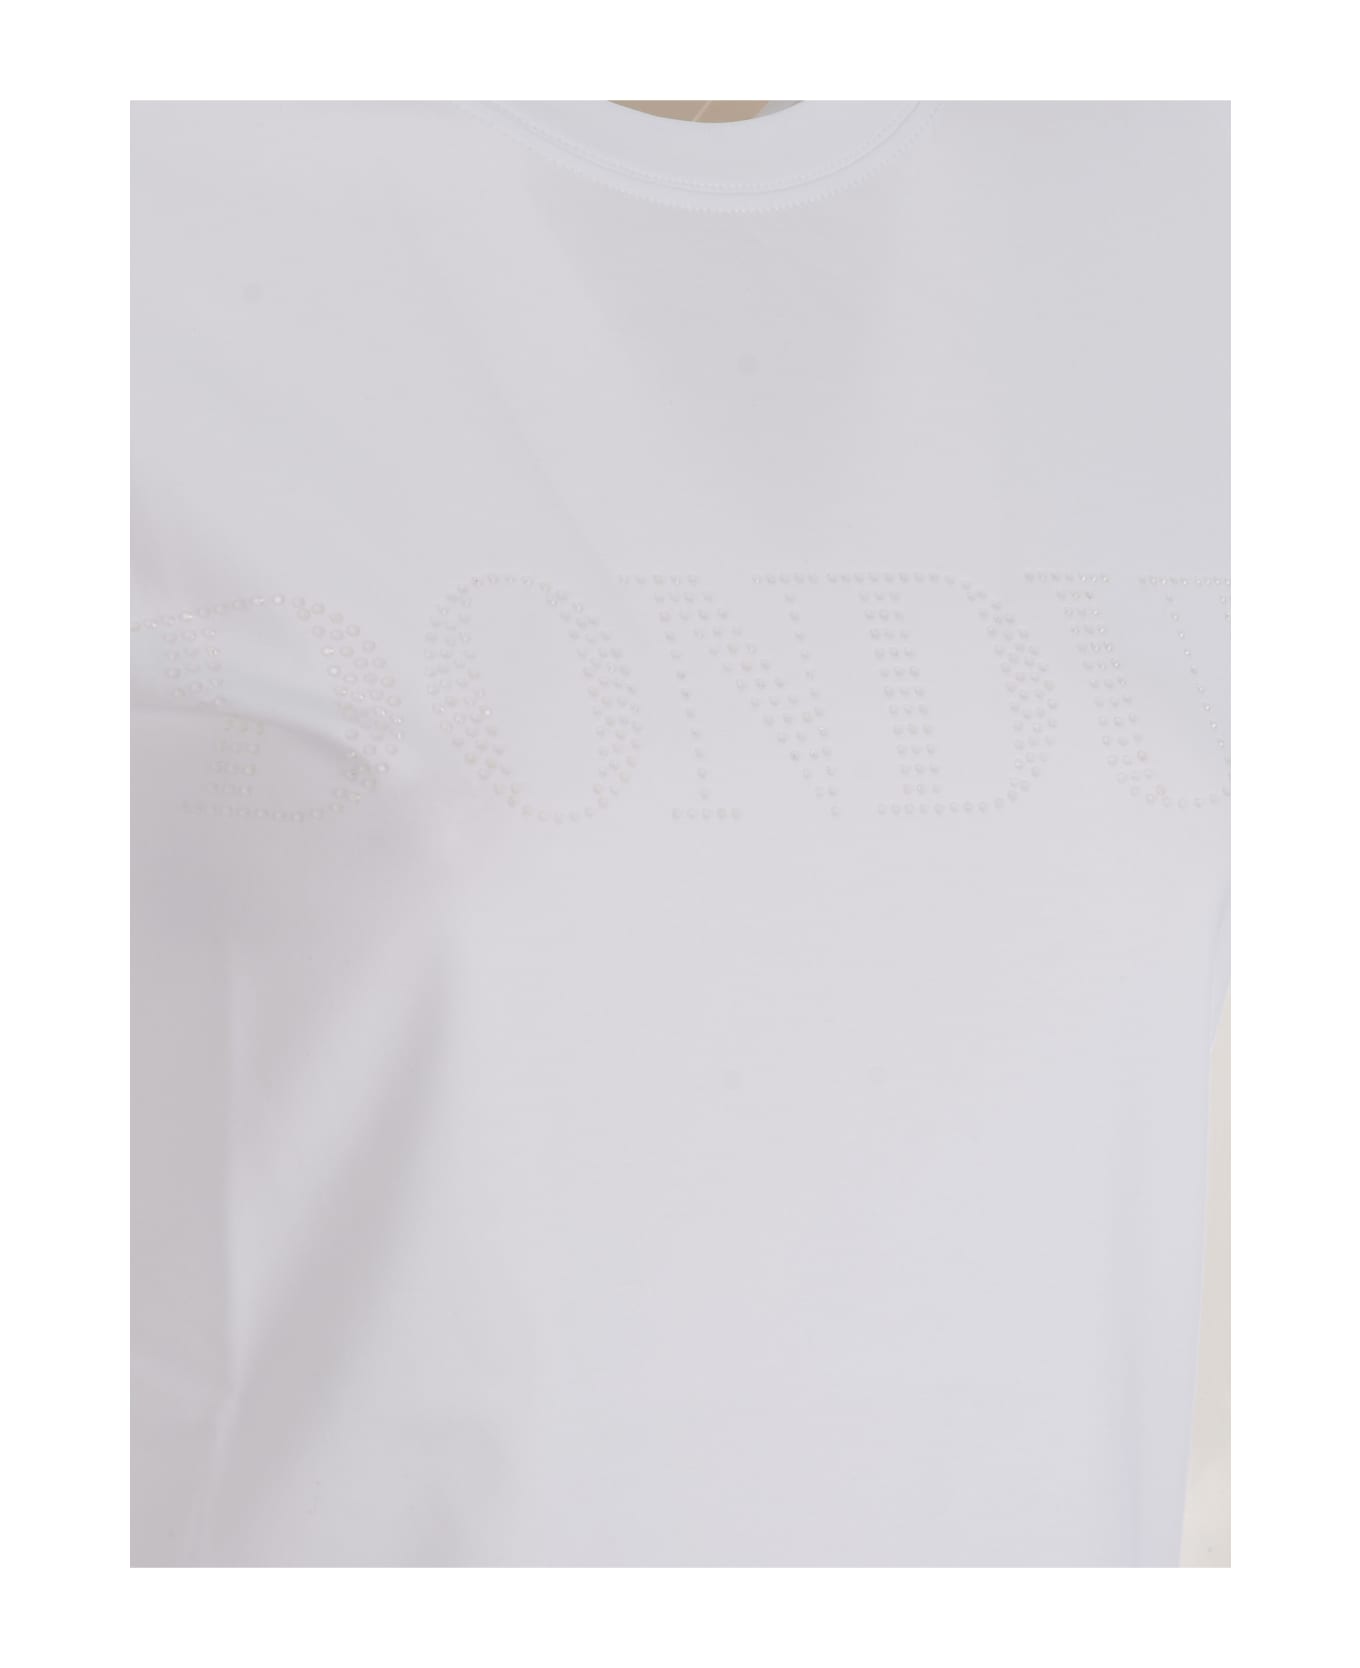 Dondup T-shirt Dondup In Cotton - Bianco